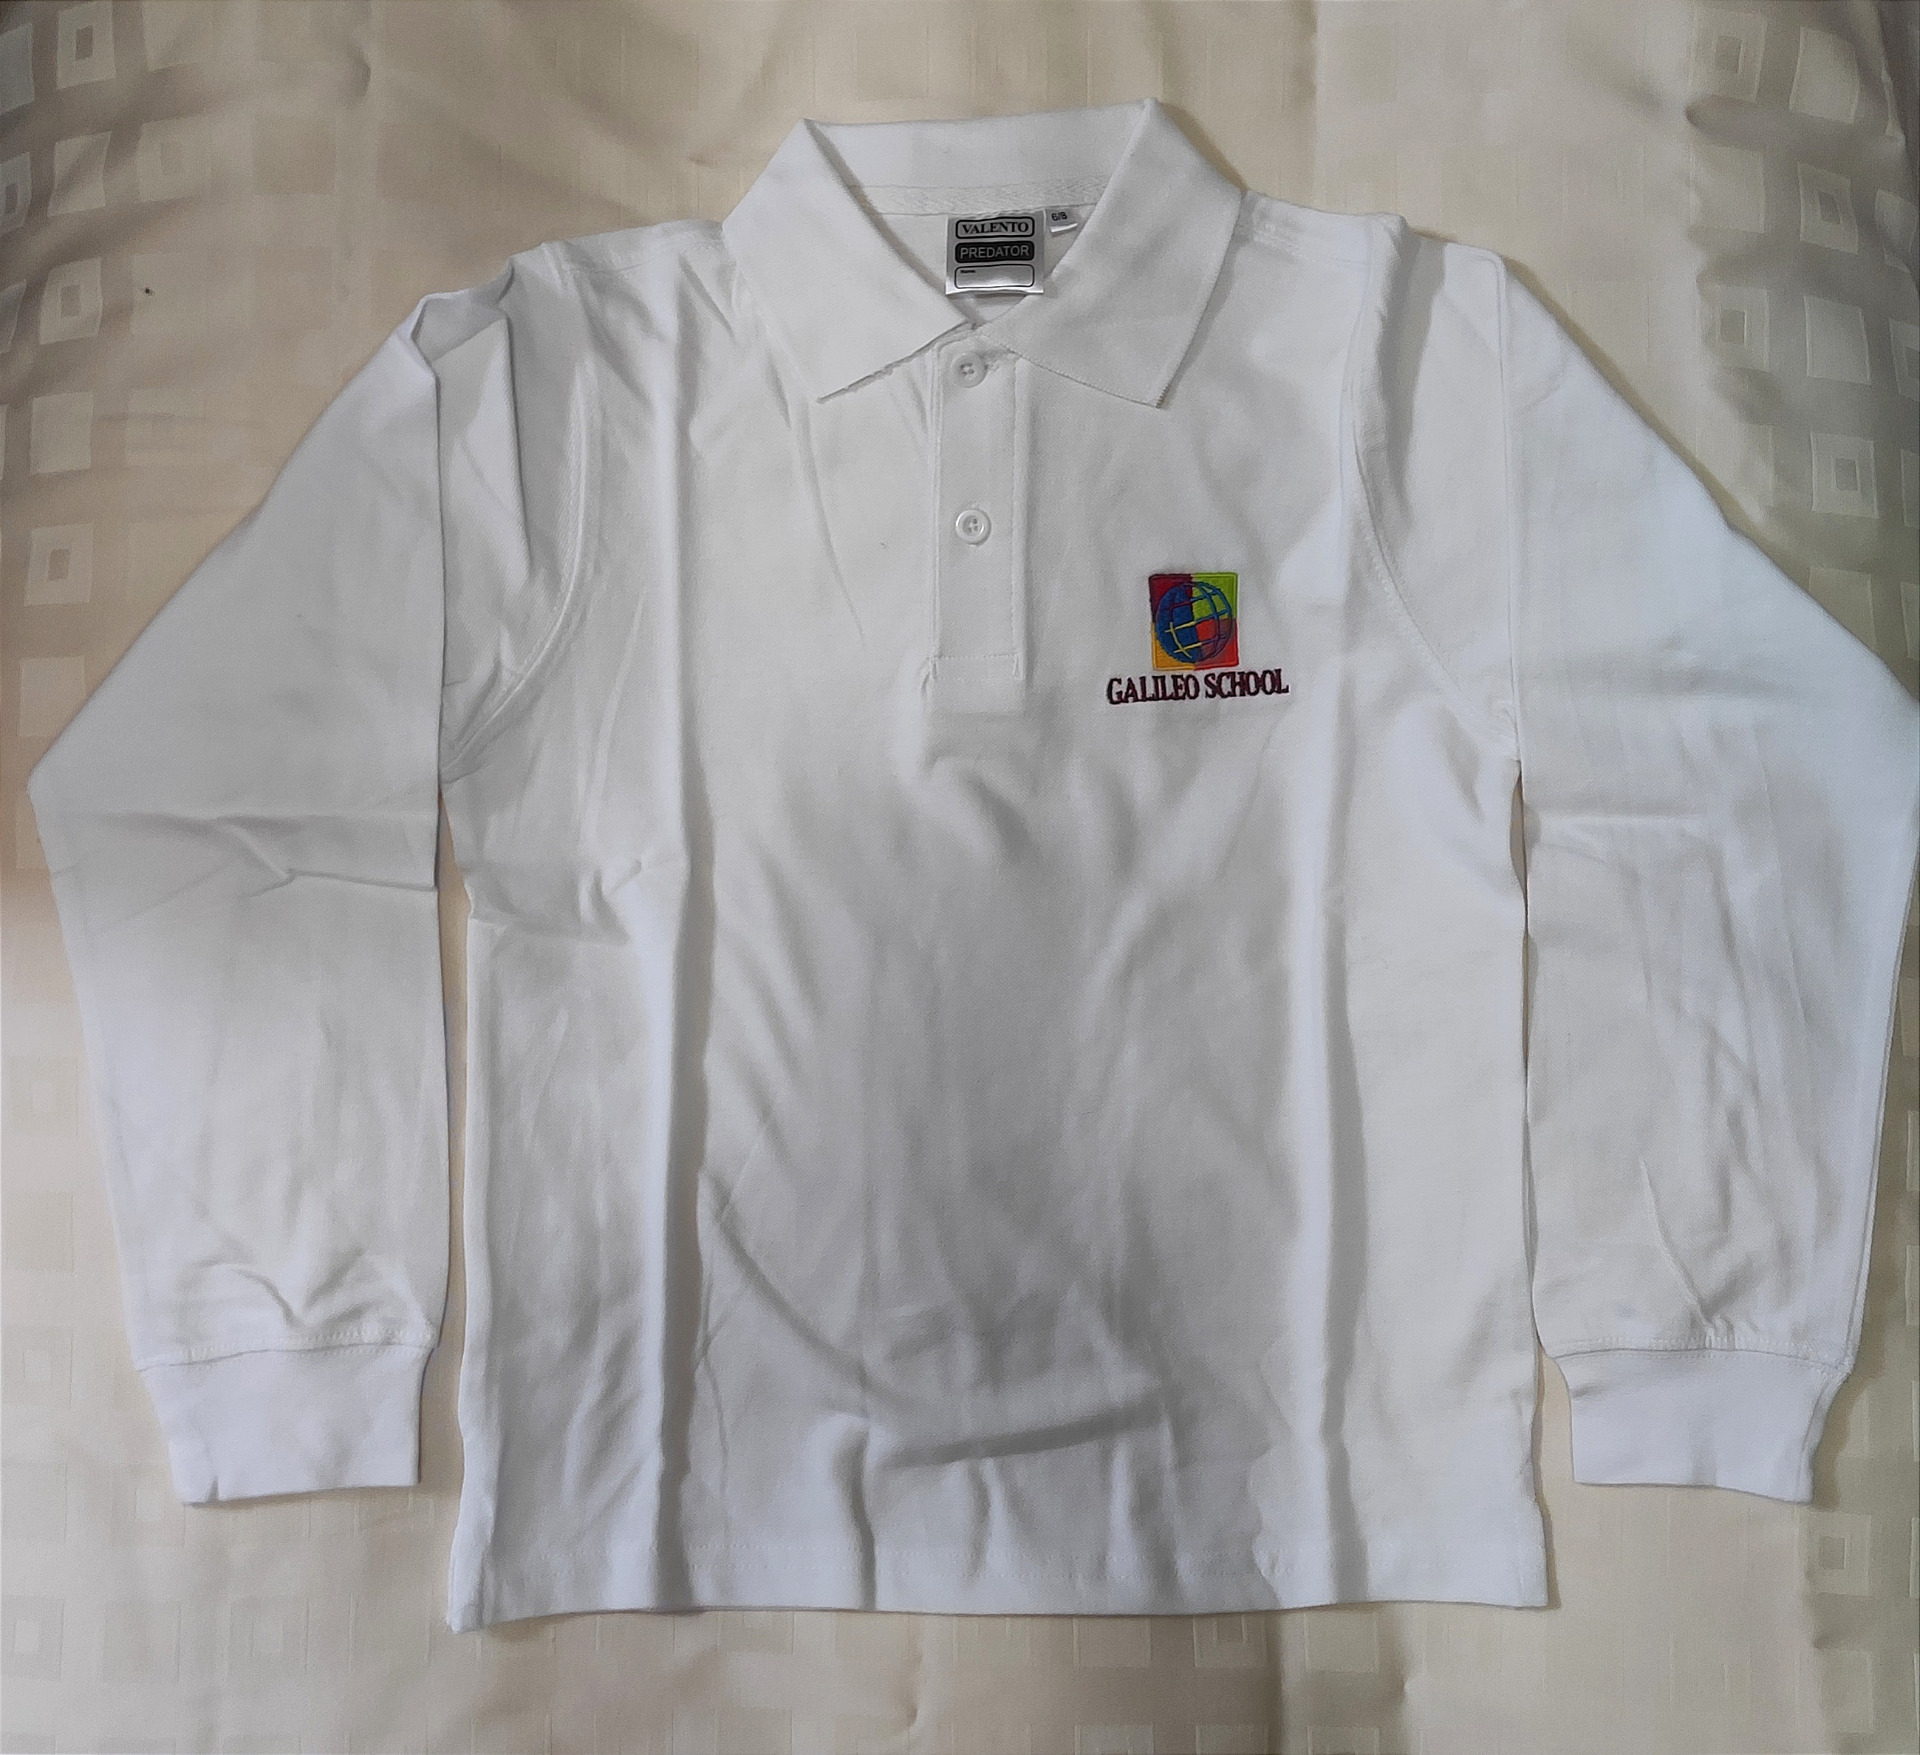 polo košela dlhý rukáv - biela / long sleeve polo shirt - white; 
 
cena / price: cena 14€